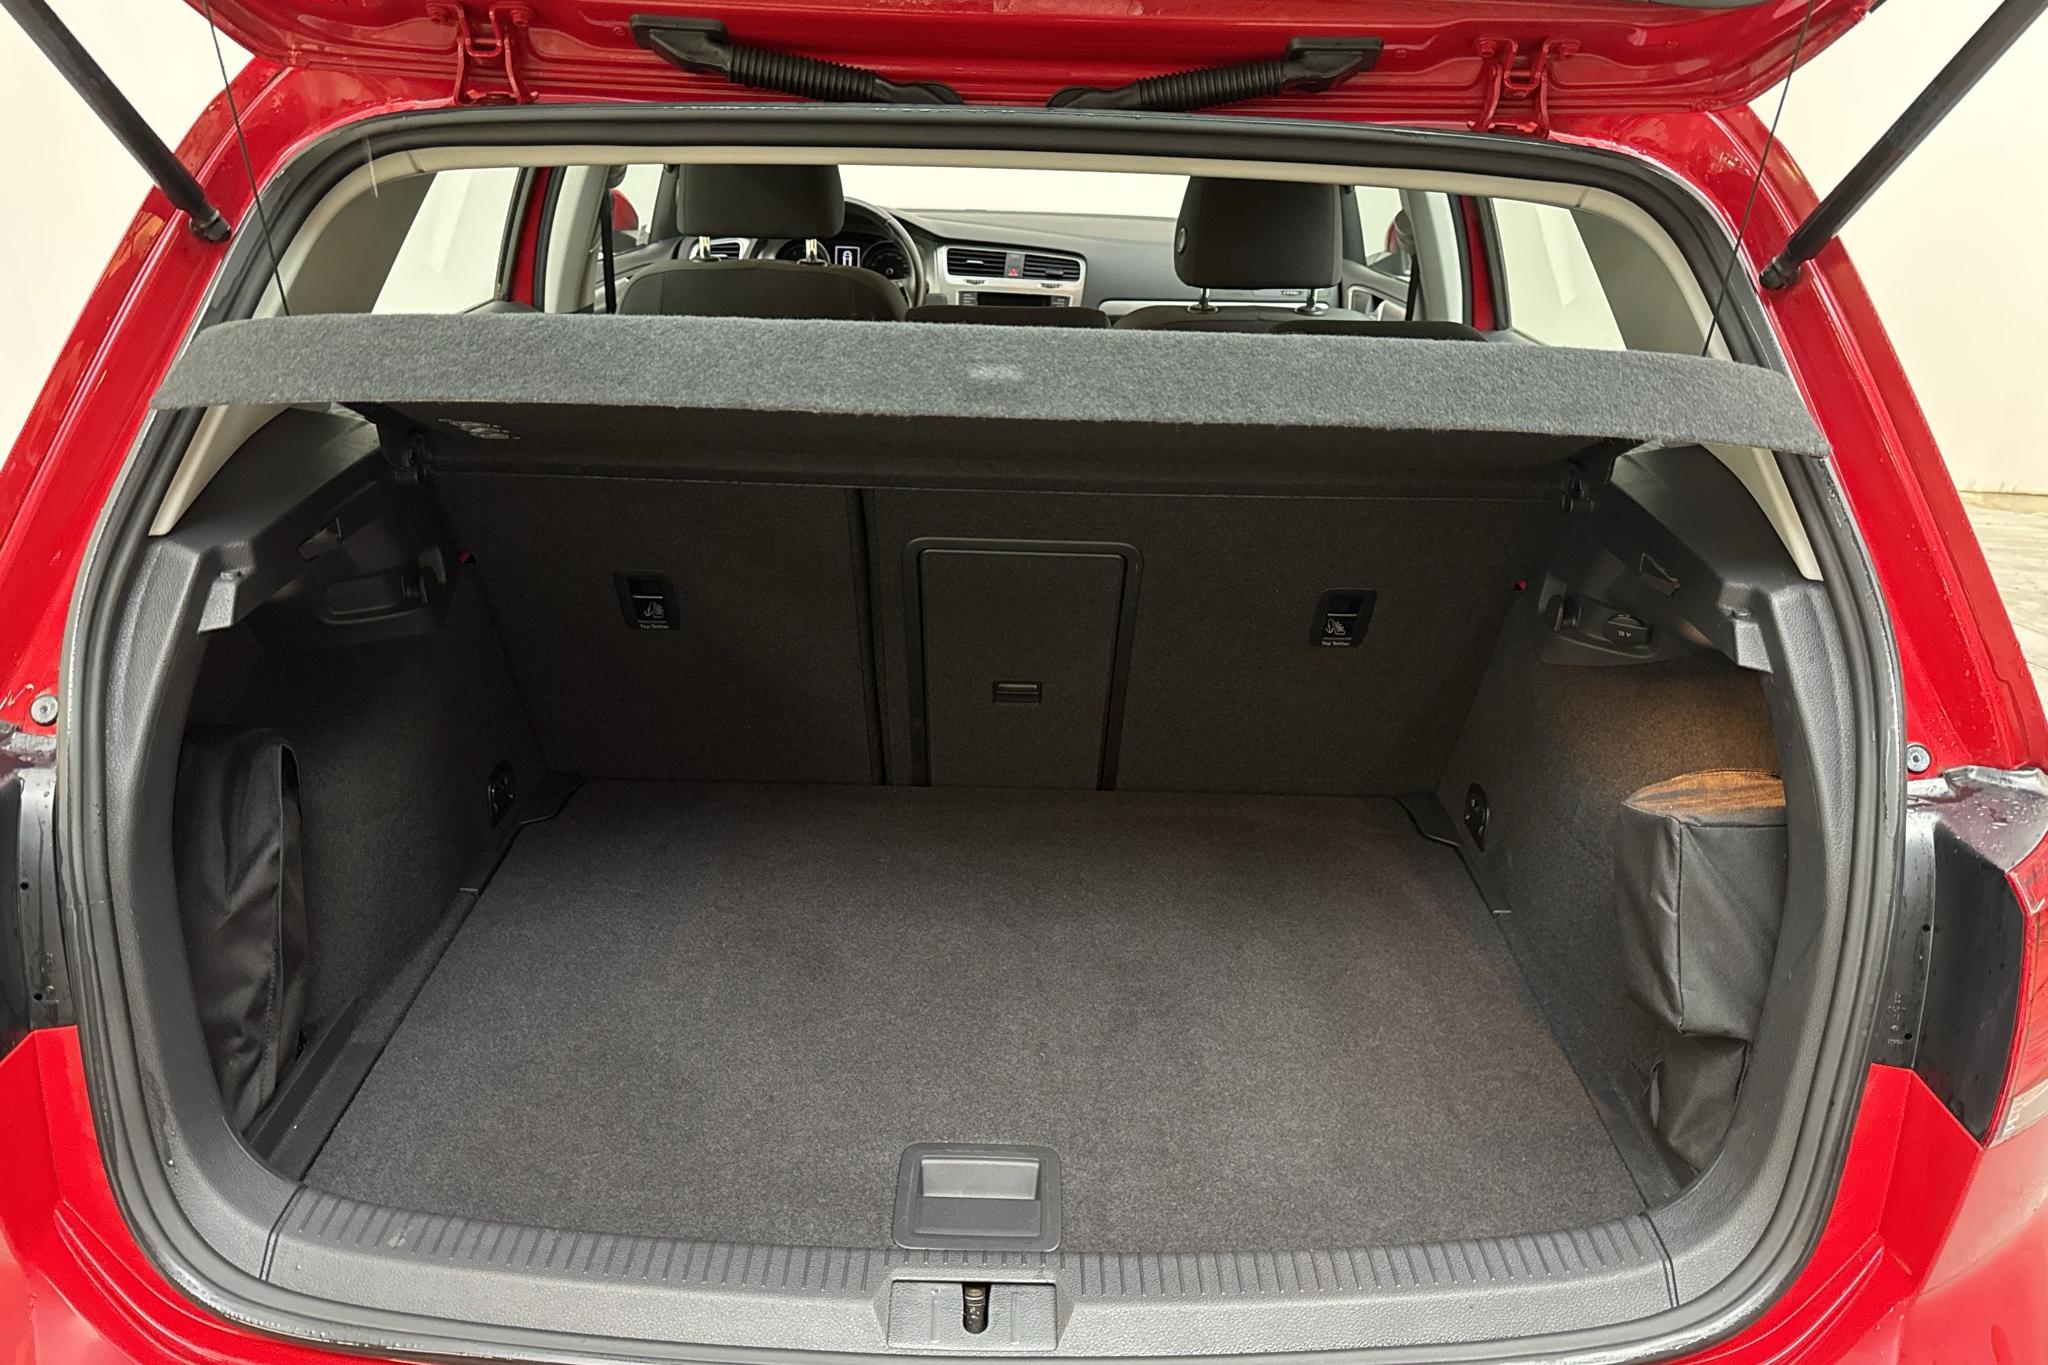 VW Golf VII 1.4 TGI 5dr (110hk) - 4 201 mil - Manuell - röd - 2015